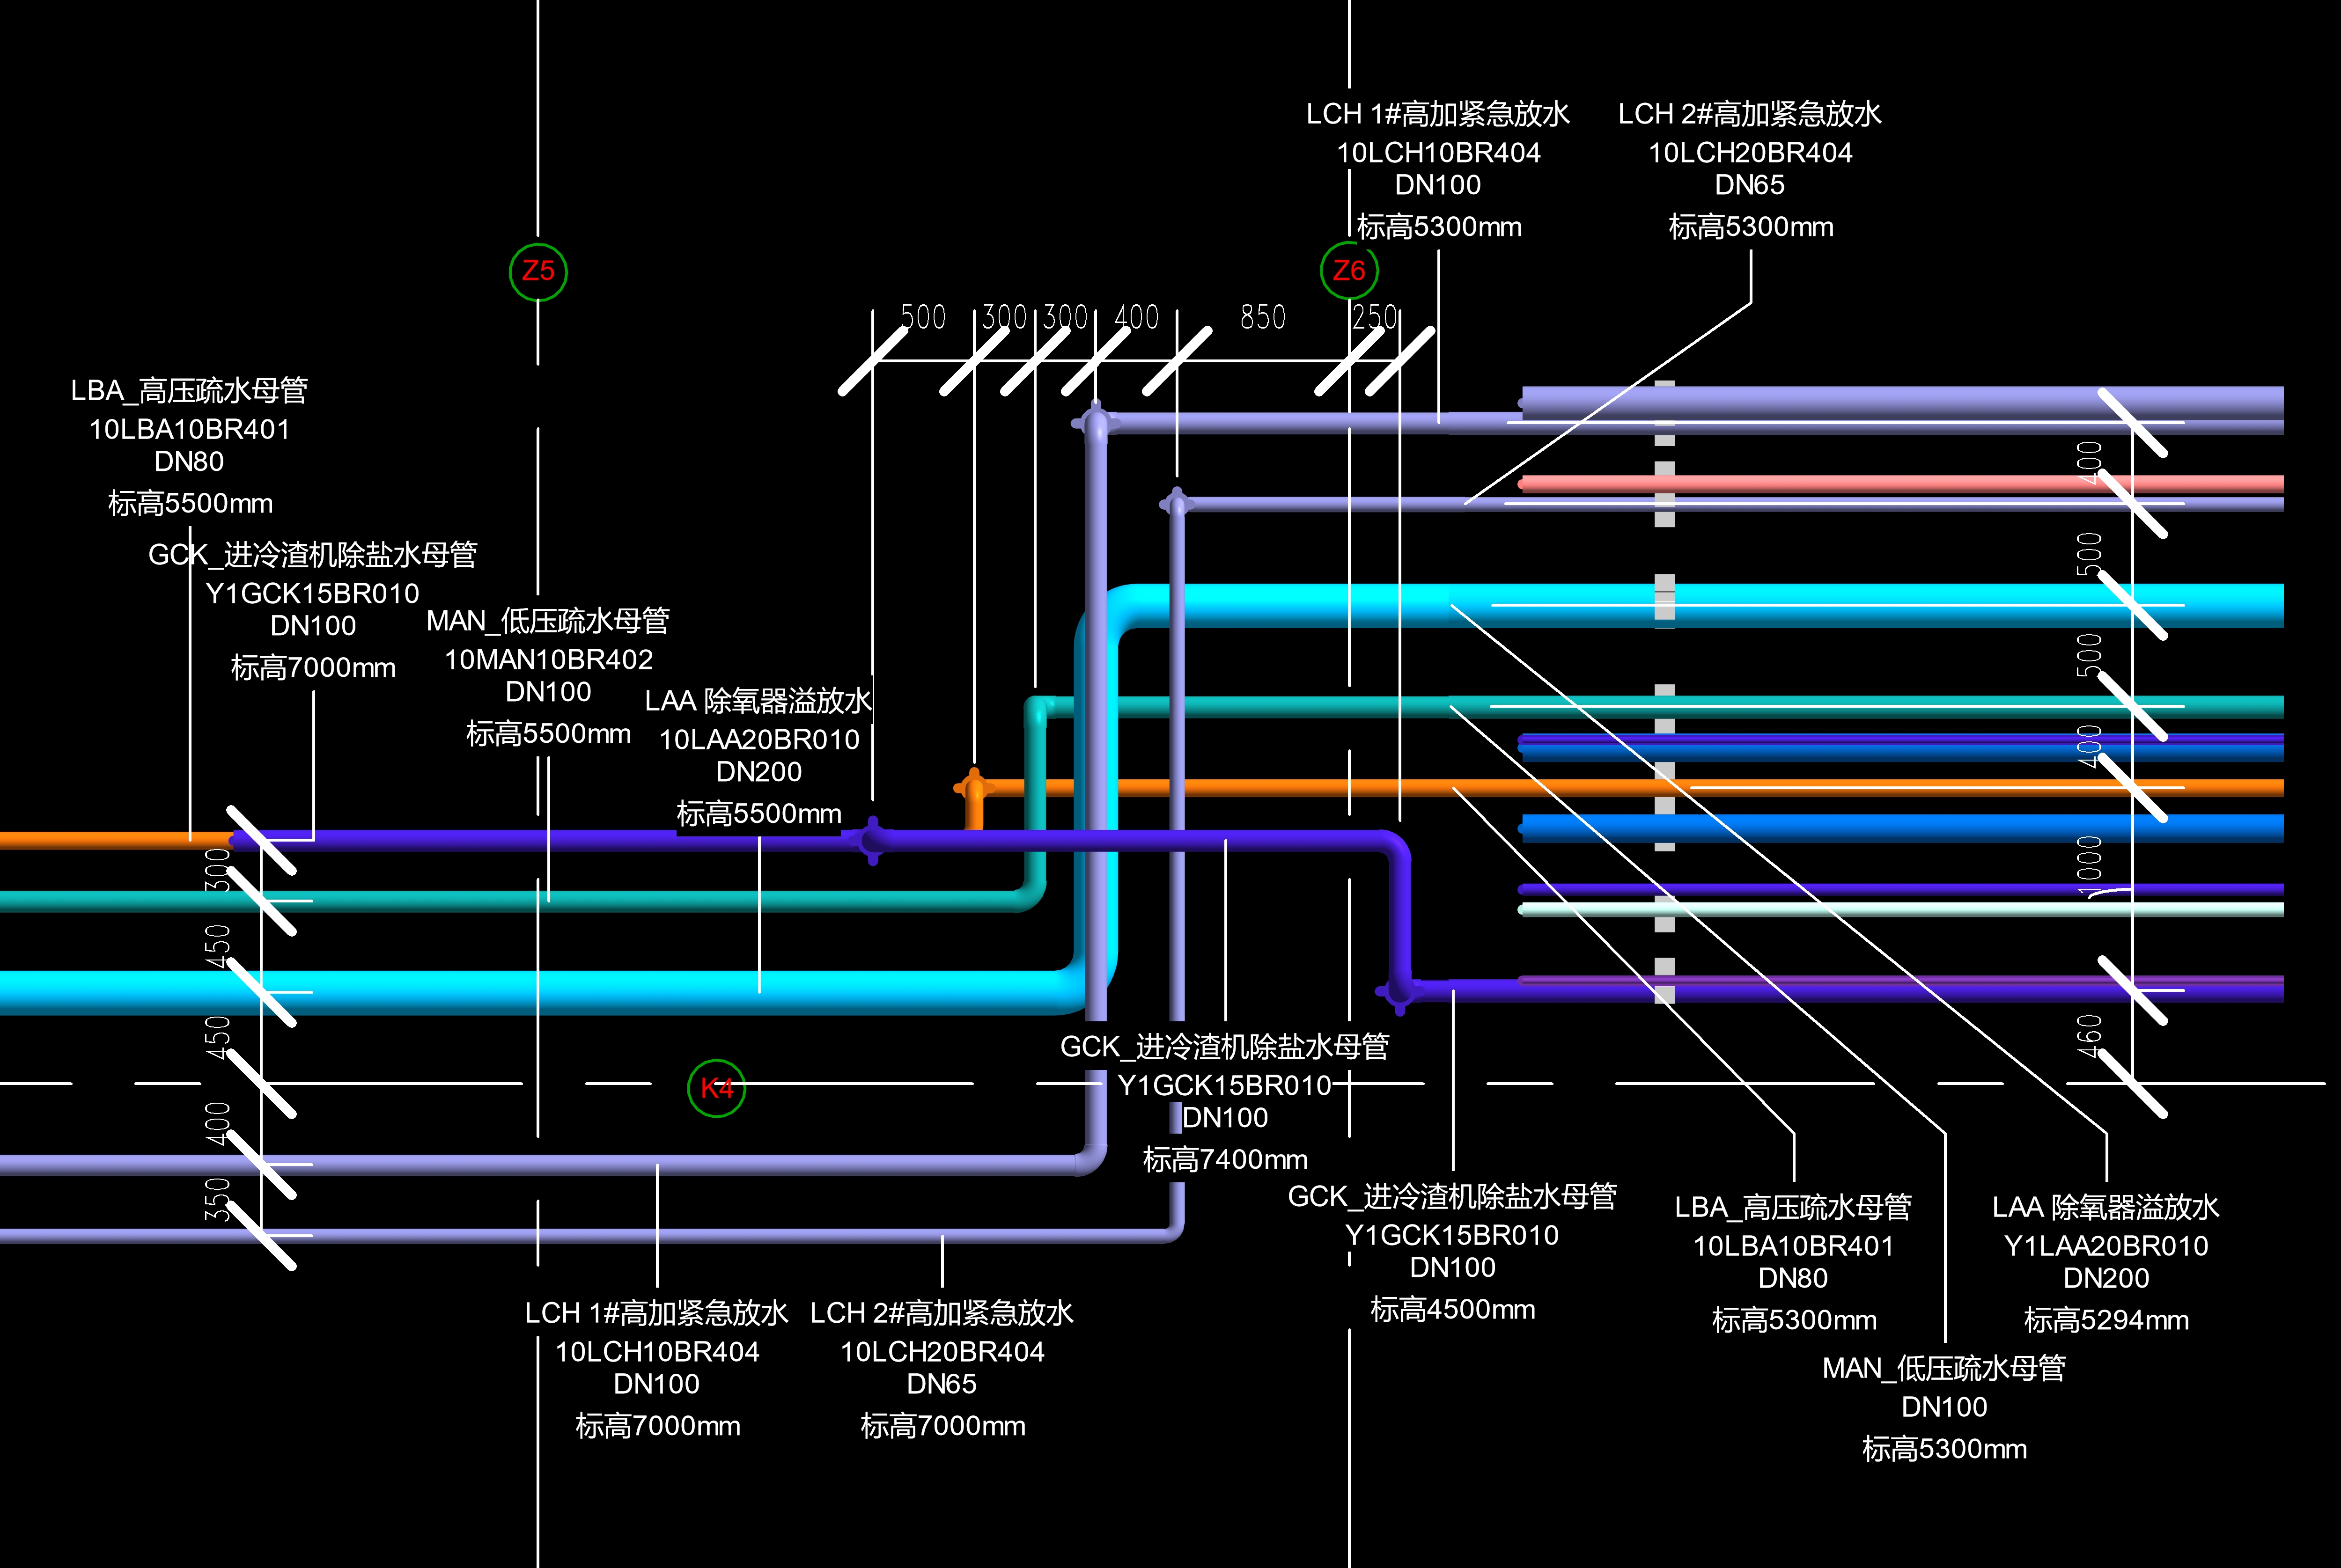 03_锅炉A_机务与室外管道接口5m层-平面图.jpg